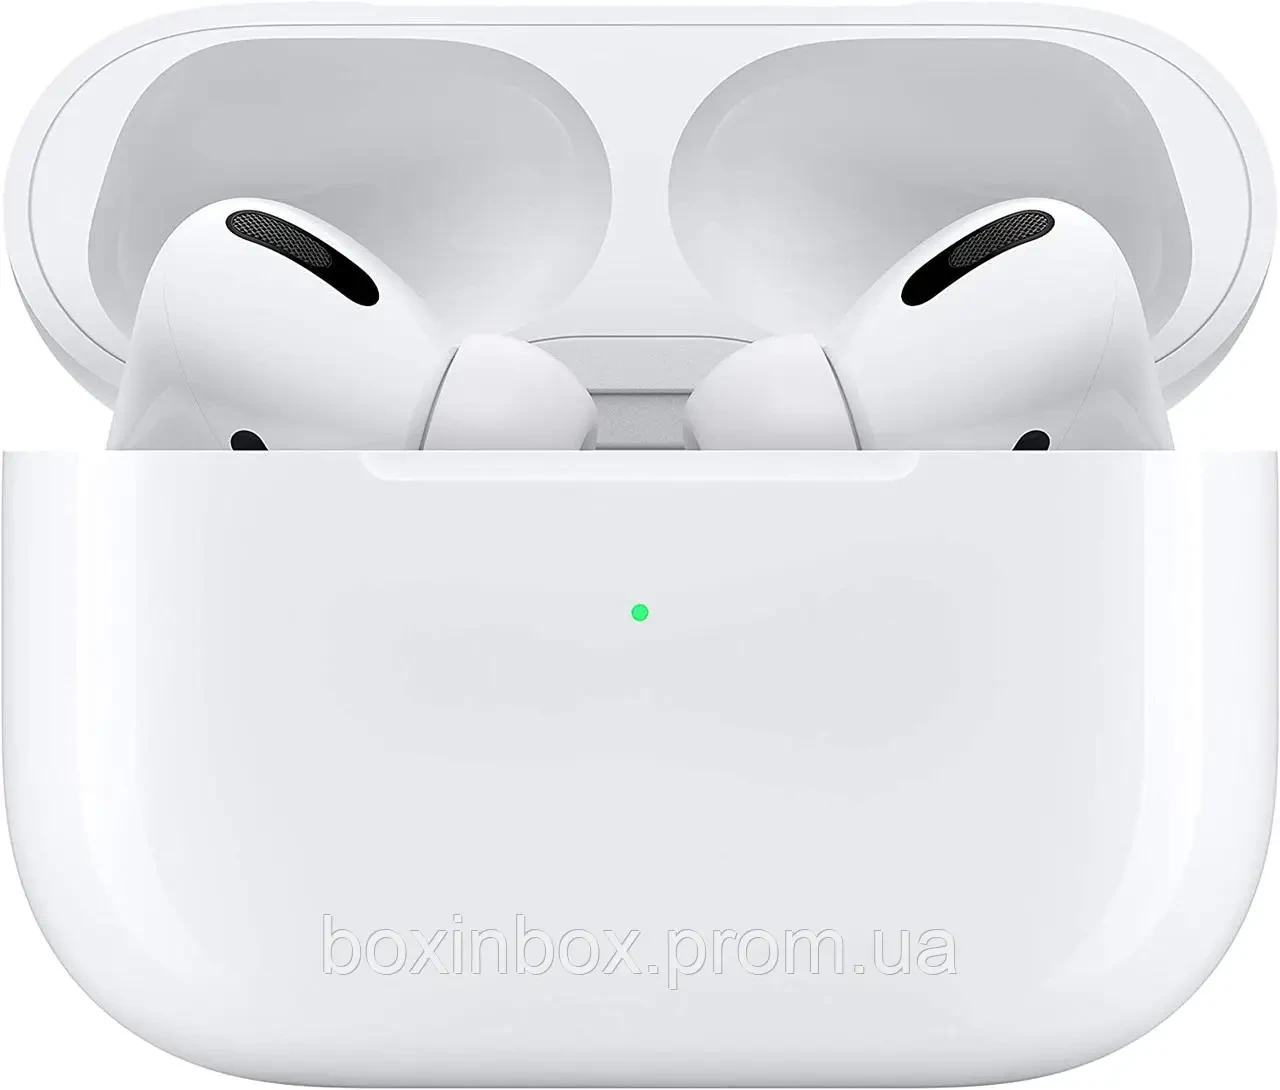 Apple AirPods Pro (Оригінал) з вітрини, без кабелю!!!